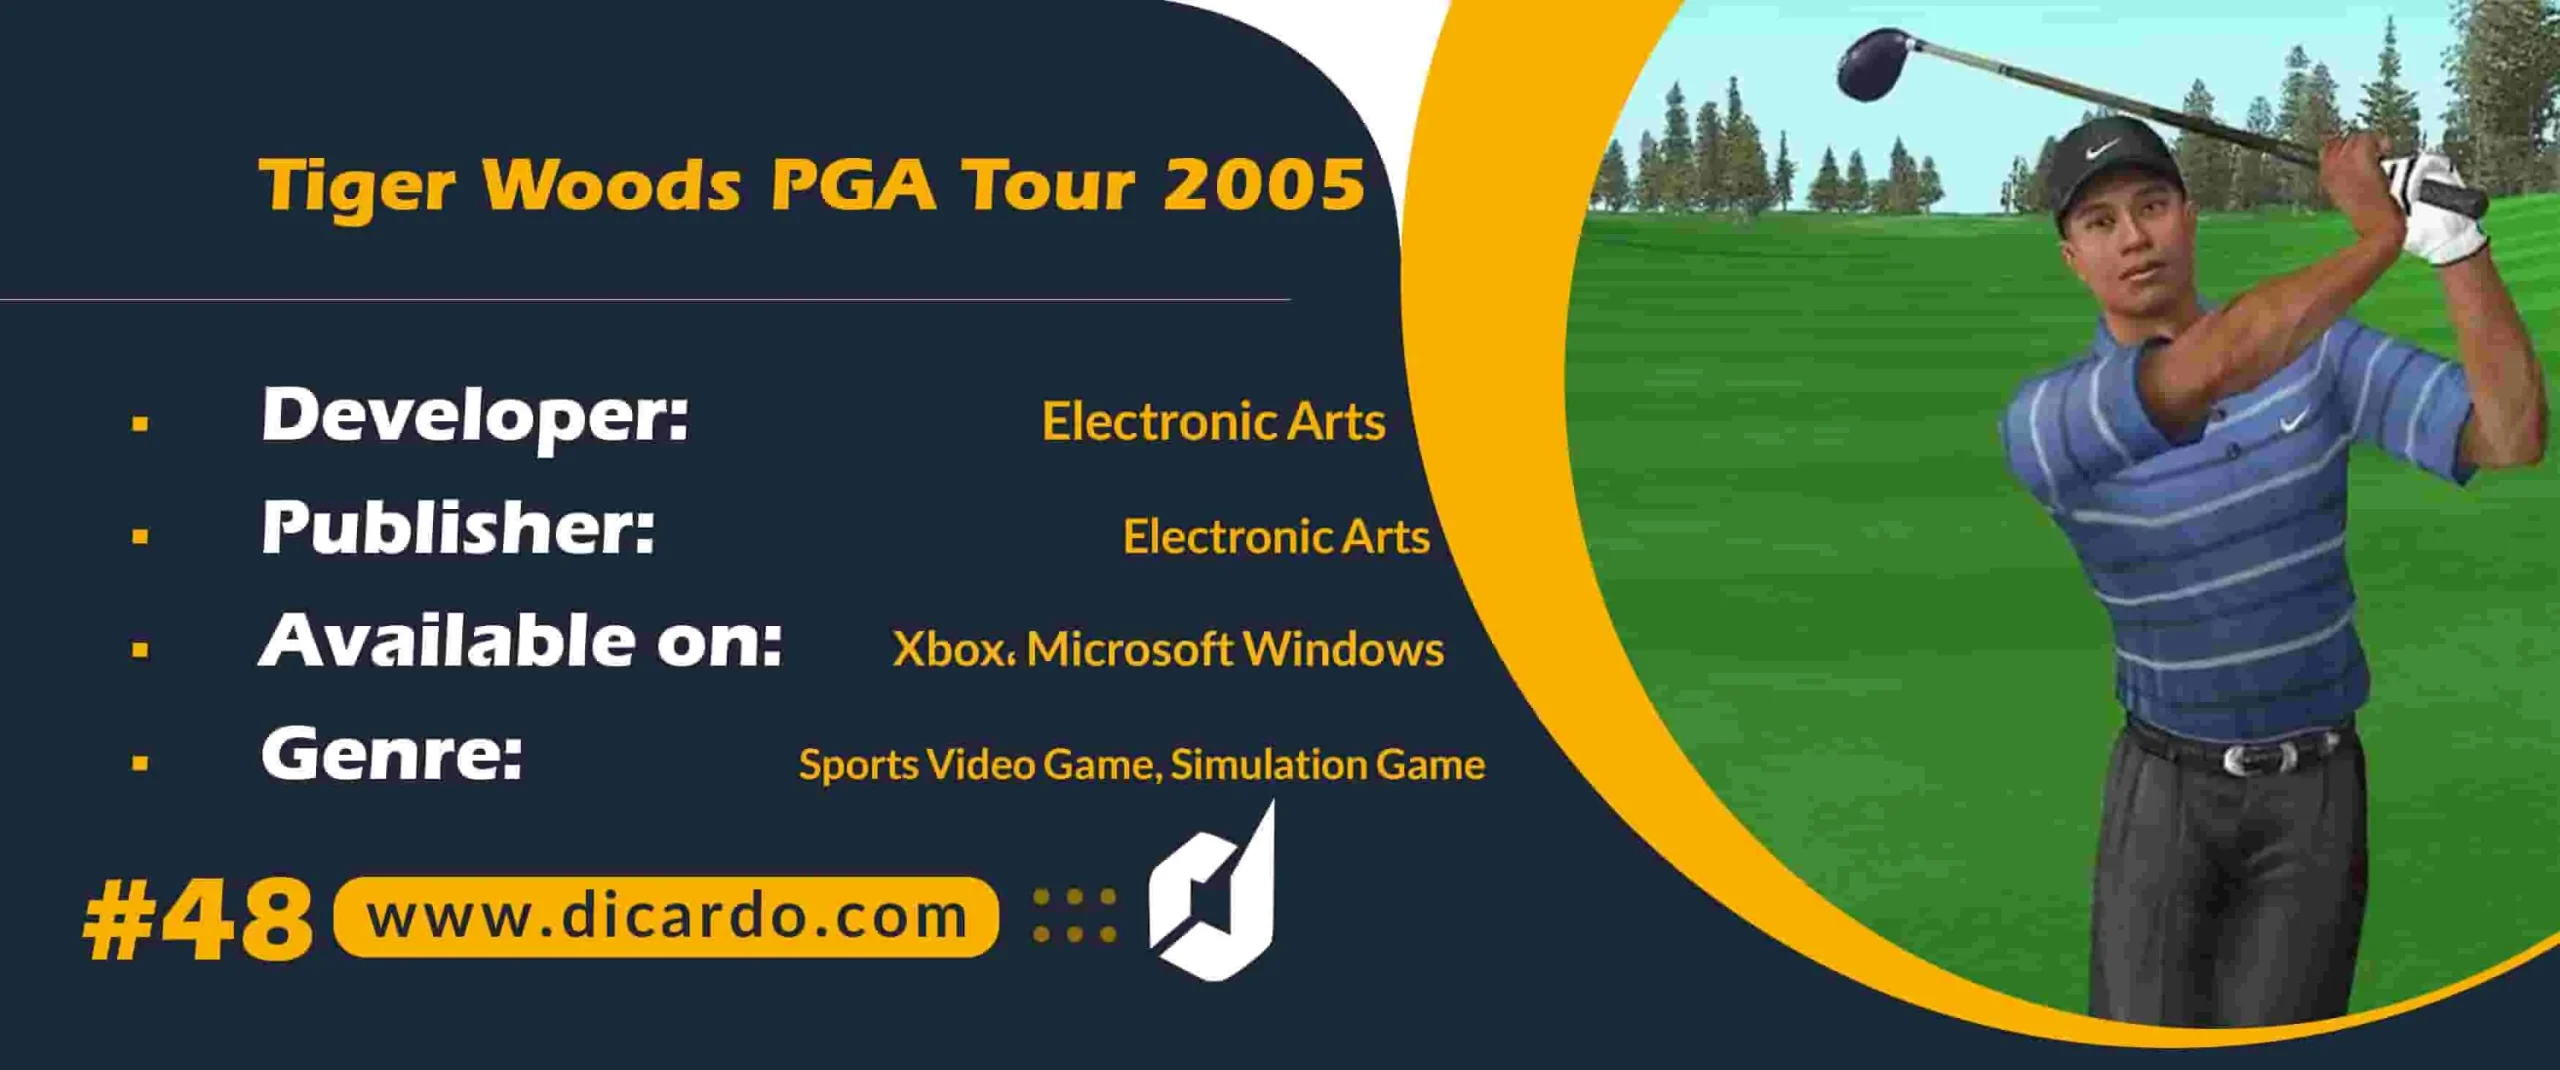 #48 تایگر وودز پی جی ای تور 2005 Tiger Woods PGA Tour 2005